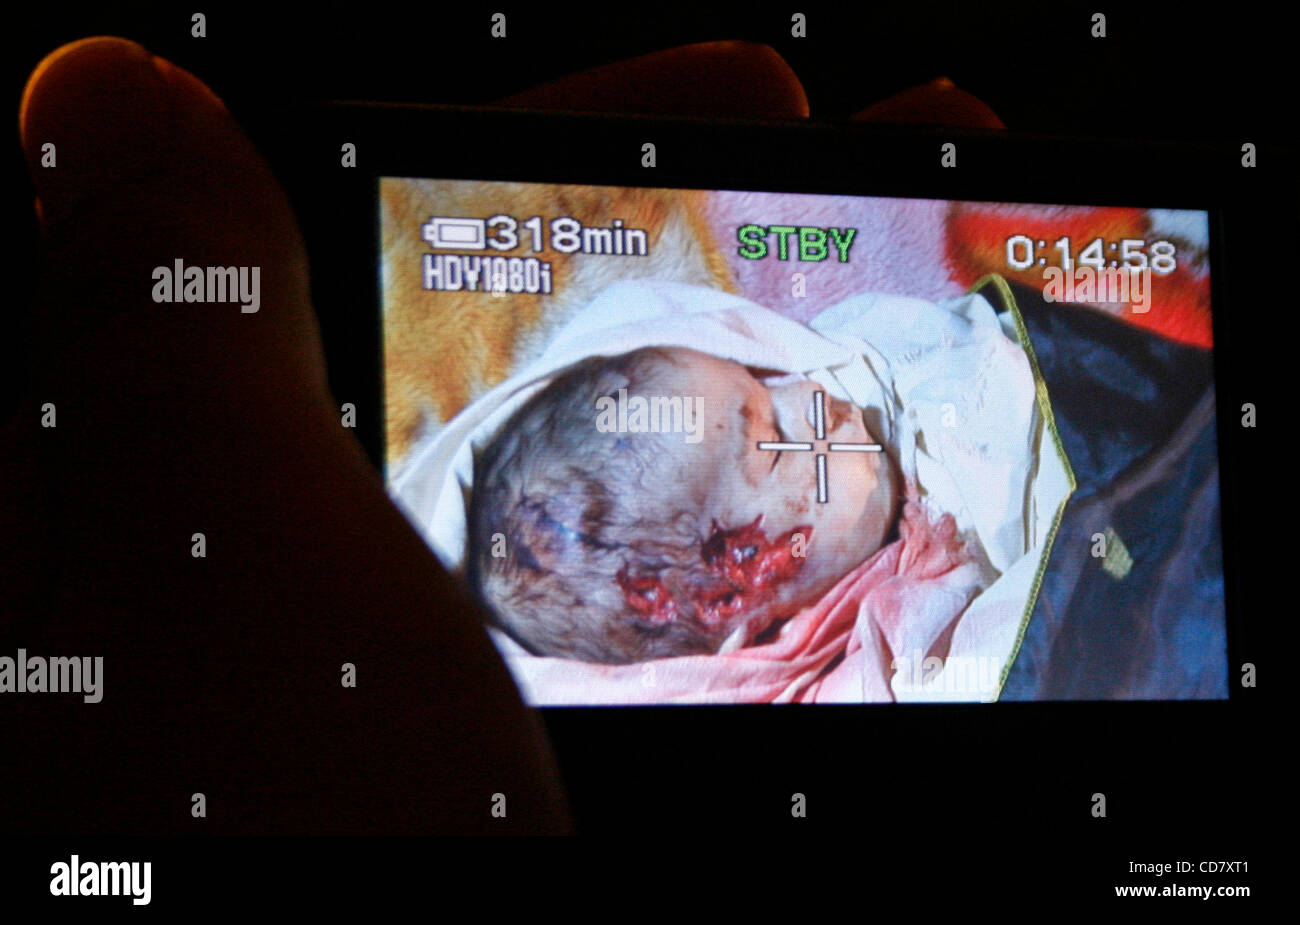 Mar 05, 2008 - Al-Karara, bande de Gaza - Le corps d'un mois fille palestinienne Amira Abu Akar, réside dans sa maison au cours de ses funérailles dans la ville de Gaza, le 5 mars 2008. Le bébé et un militant du Jihad islamique ont été tués au cours d'une incursion militaire israélienne à Gaza brève . Un mois d'un Amira Banque D'Images